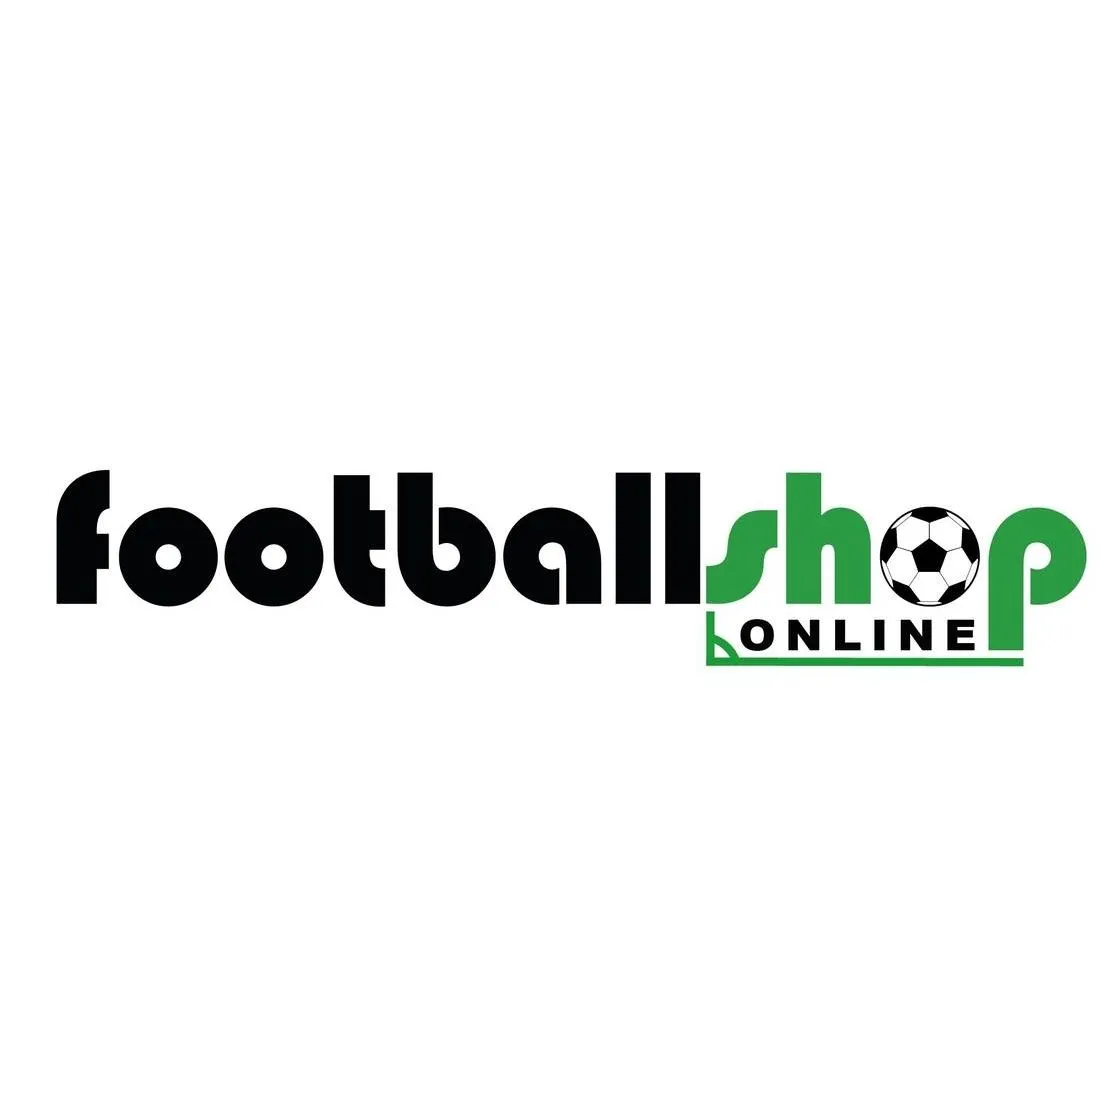 footballshoponline.com